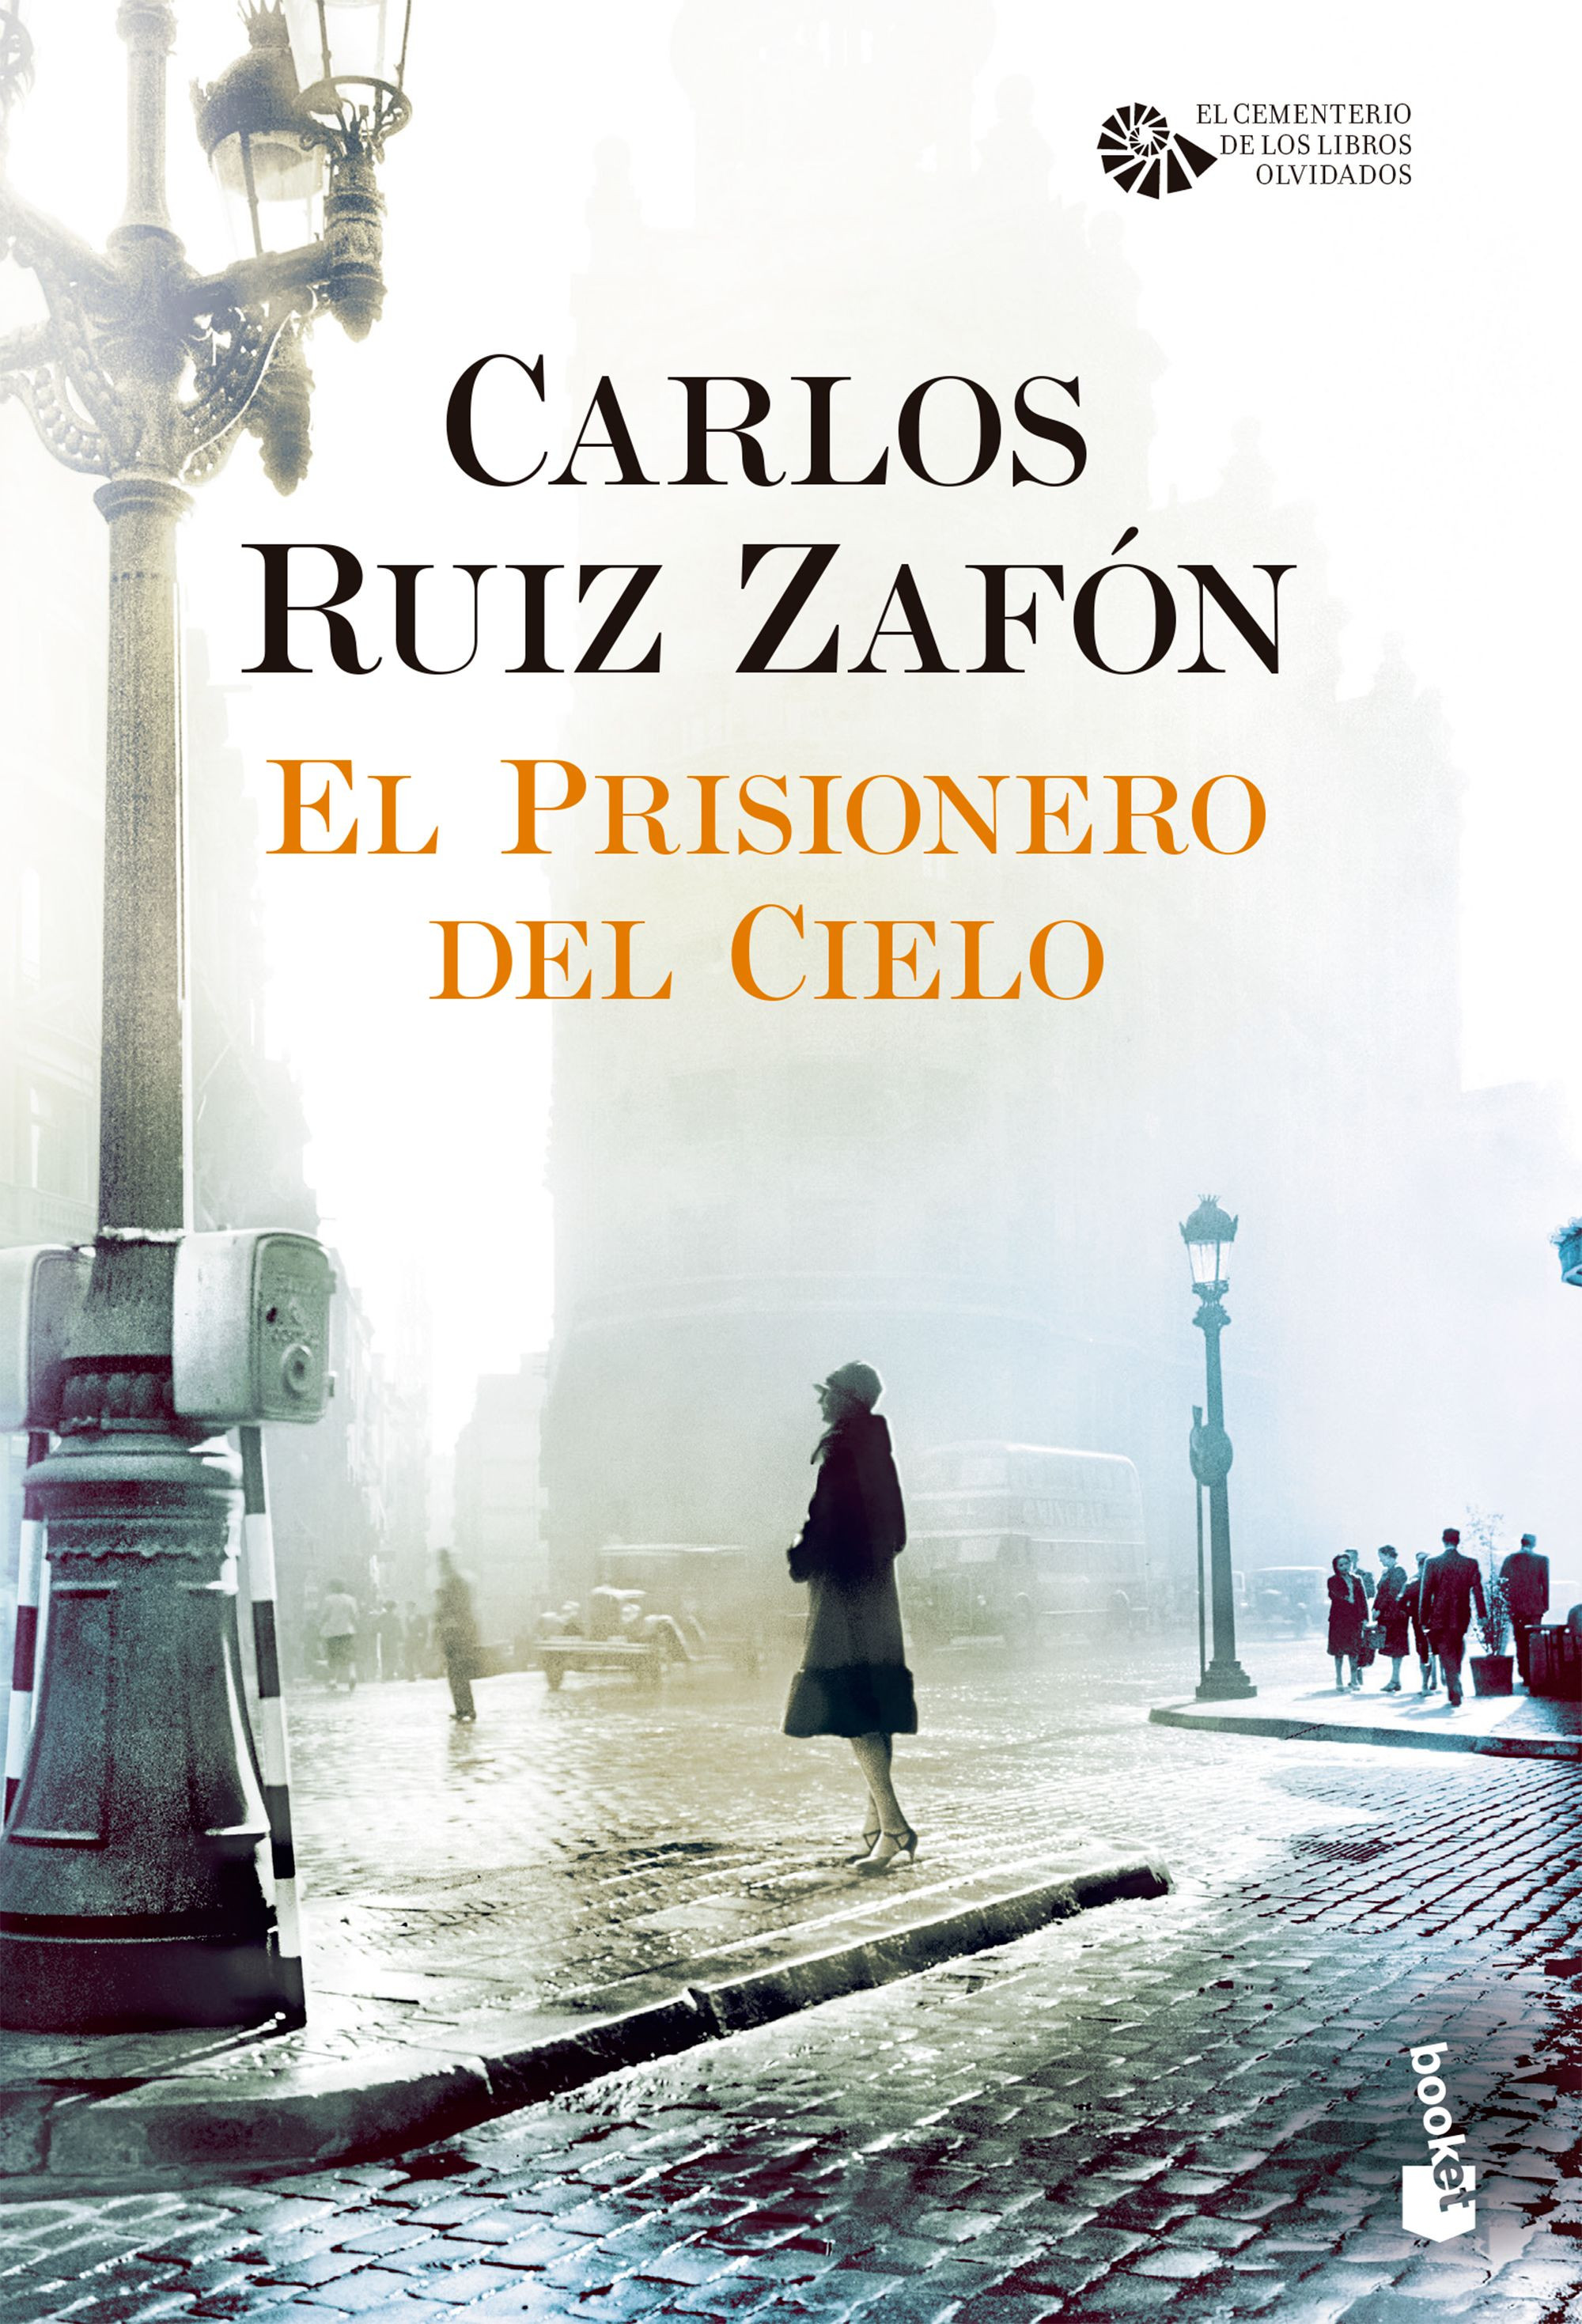 Imagen El prisionero del cielo. Carlos Ruiz Zafón